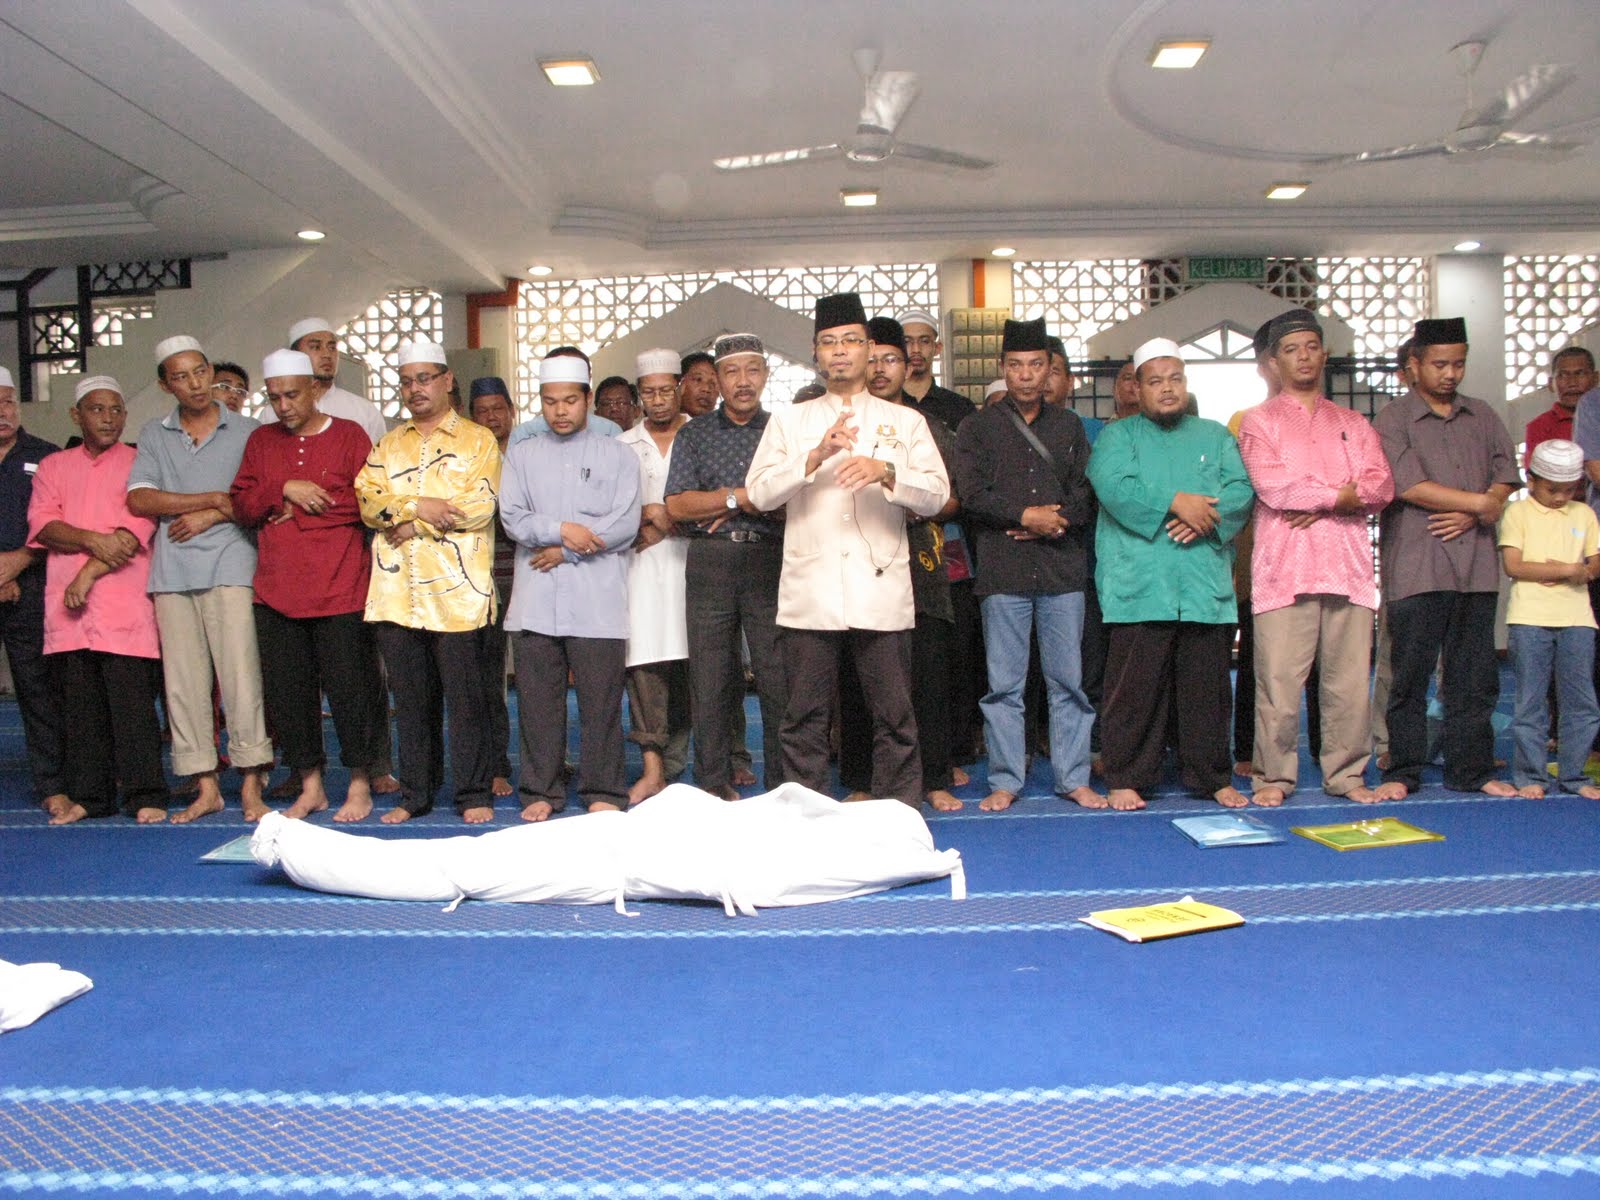 Badan Khairat Kematian Dan Kebajikan Islam Taman Desa Jaya 